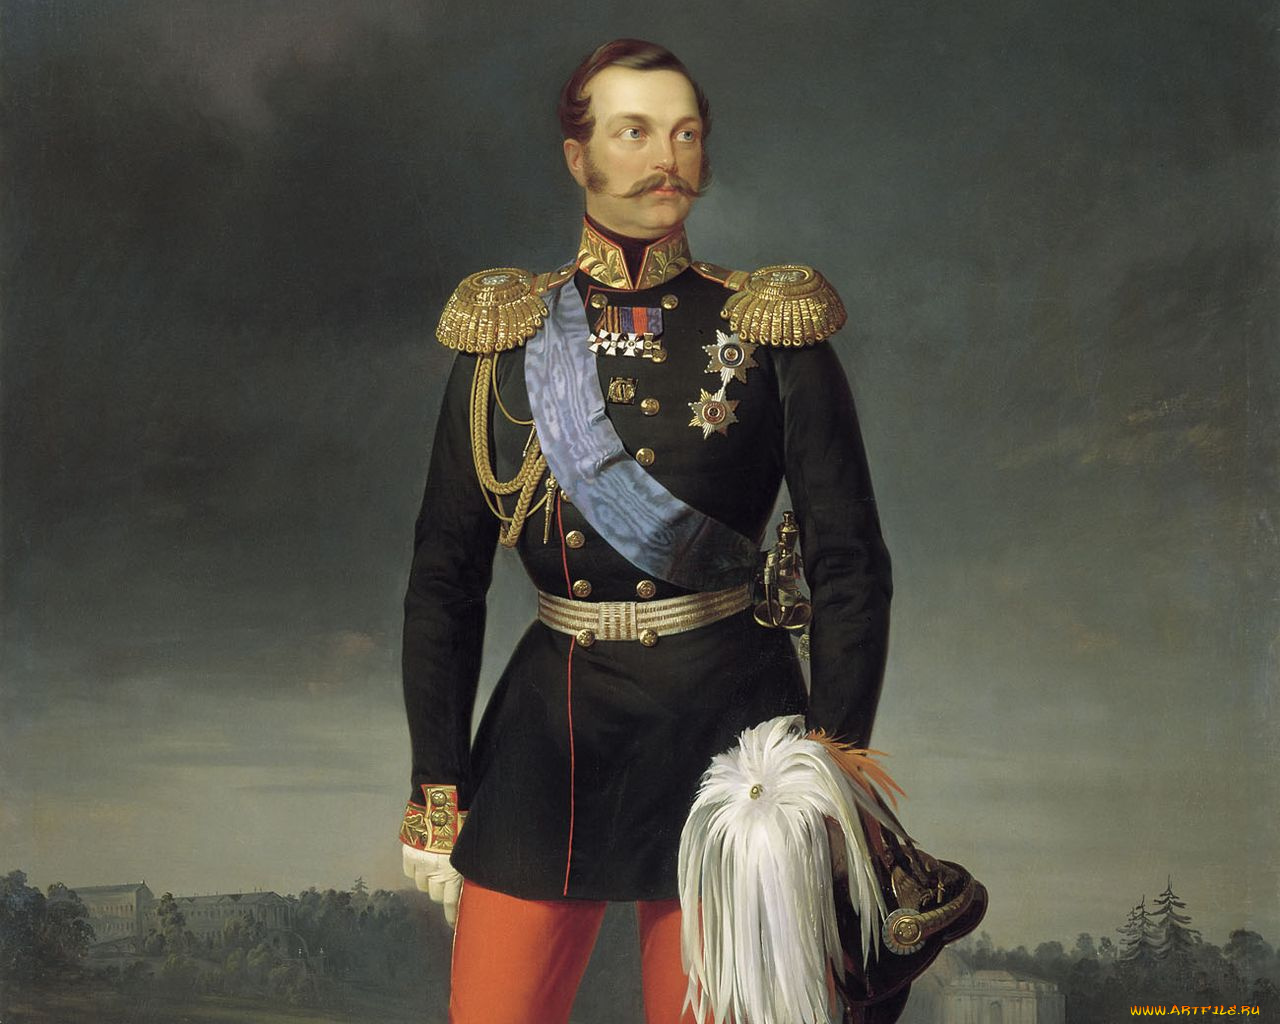 Александр II Николаевич - 1855-1881 гг. - царь освободитель